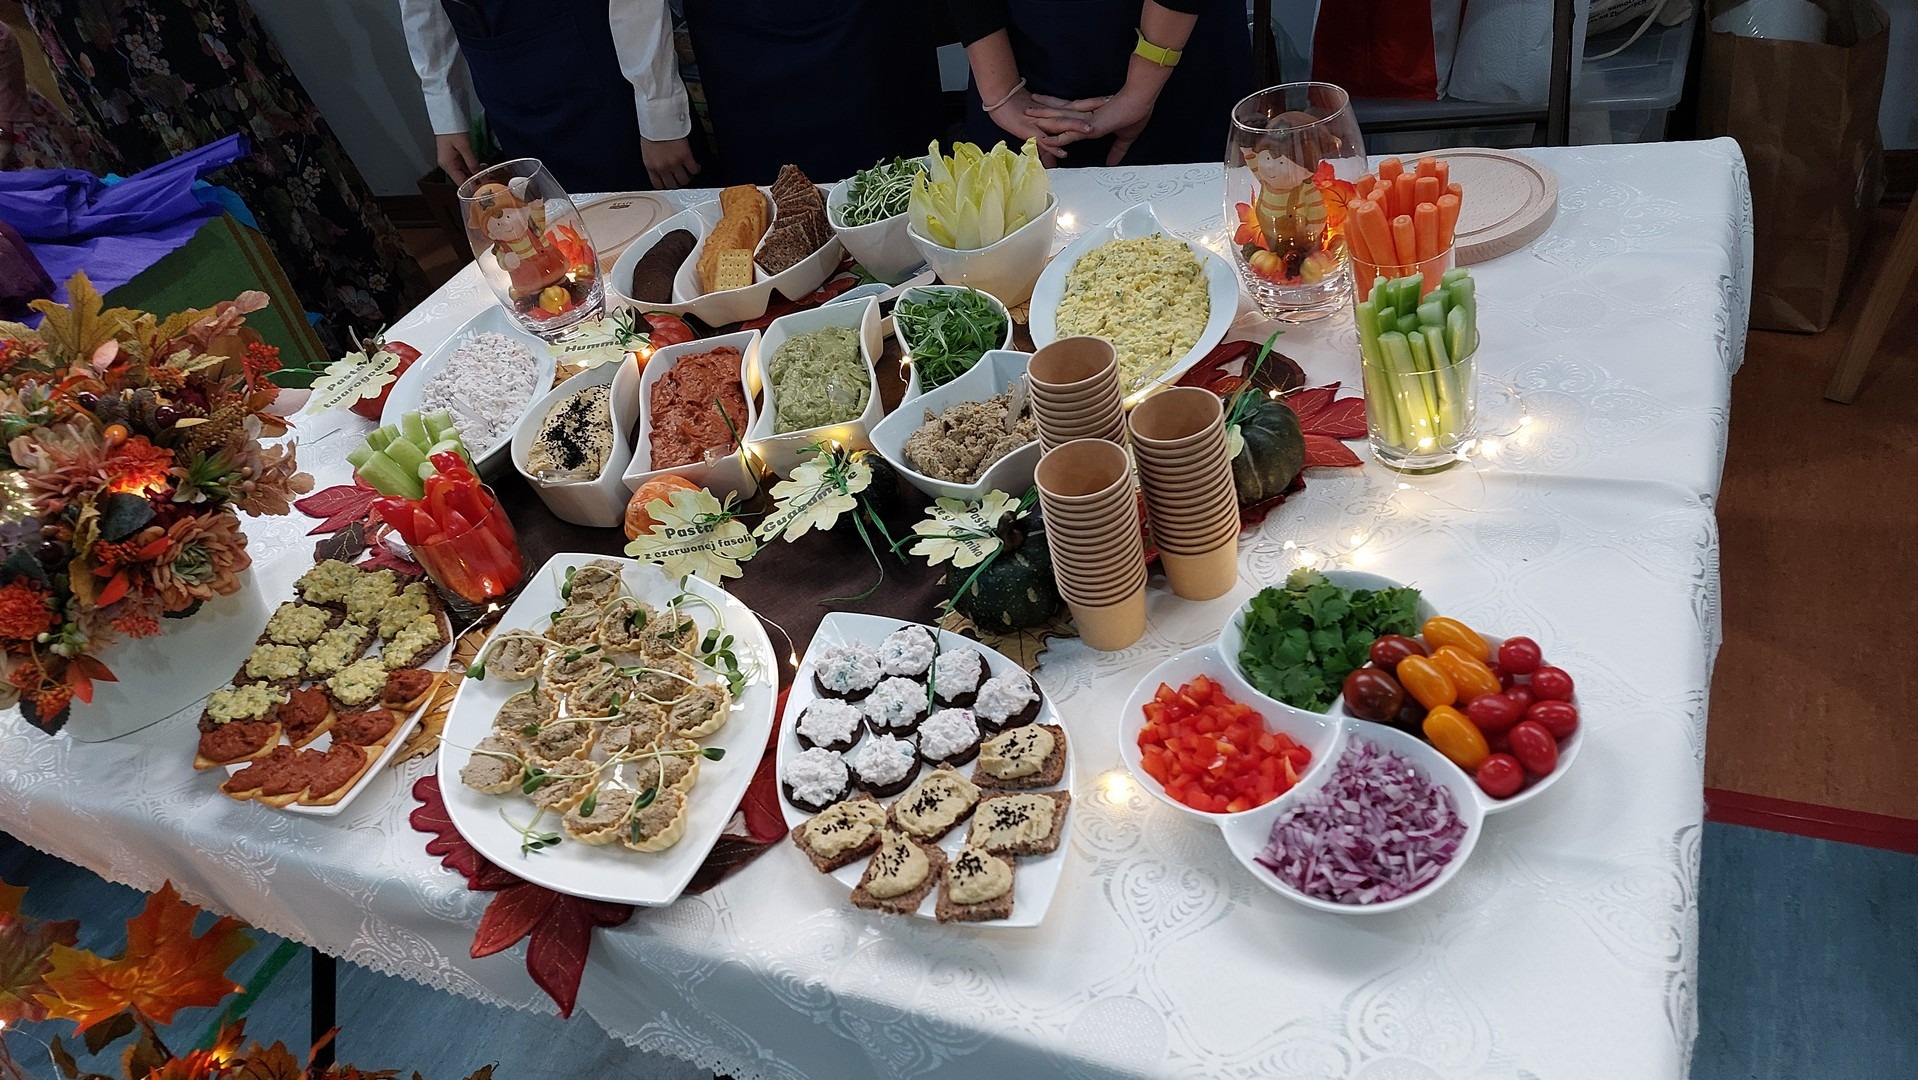 Prezentacja  stołu wystawienniczego z potrawami przygotowanymi przez nauczycieli świetlicy SP133.